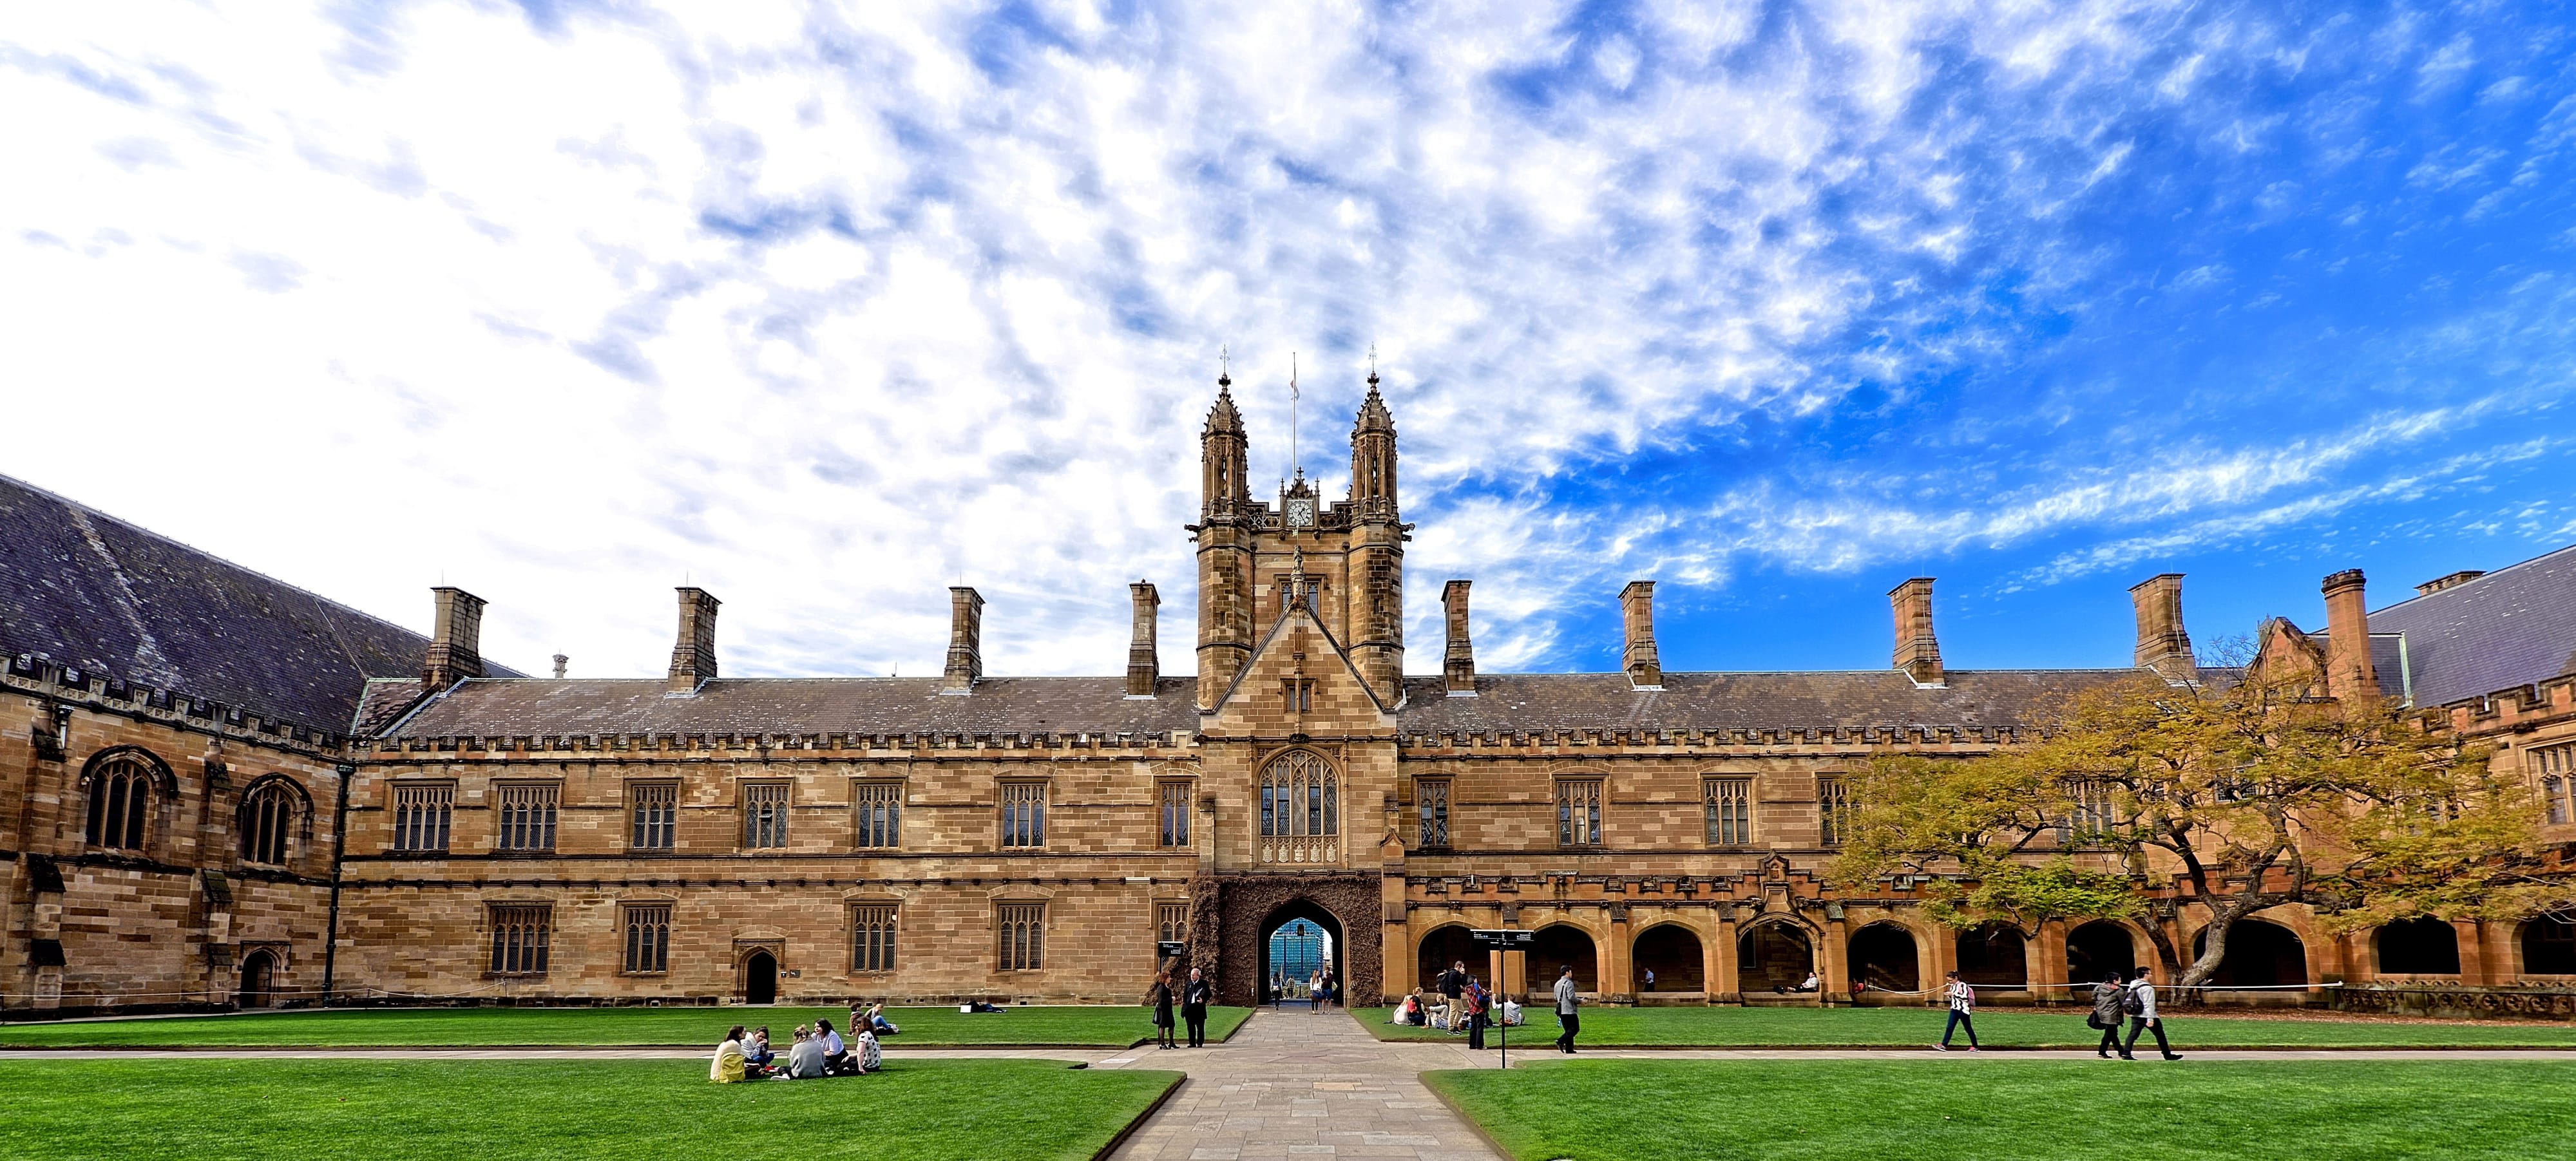 University of Sydney in Australia